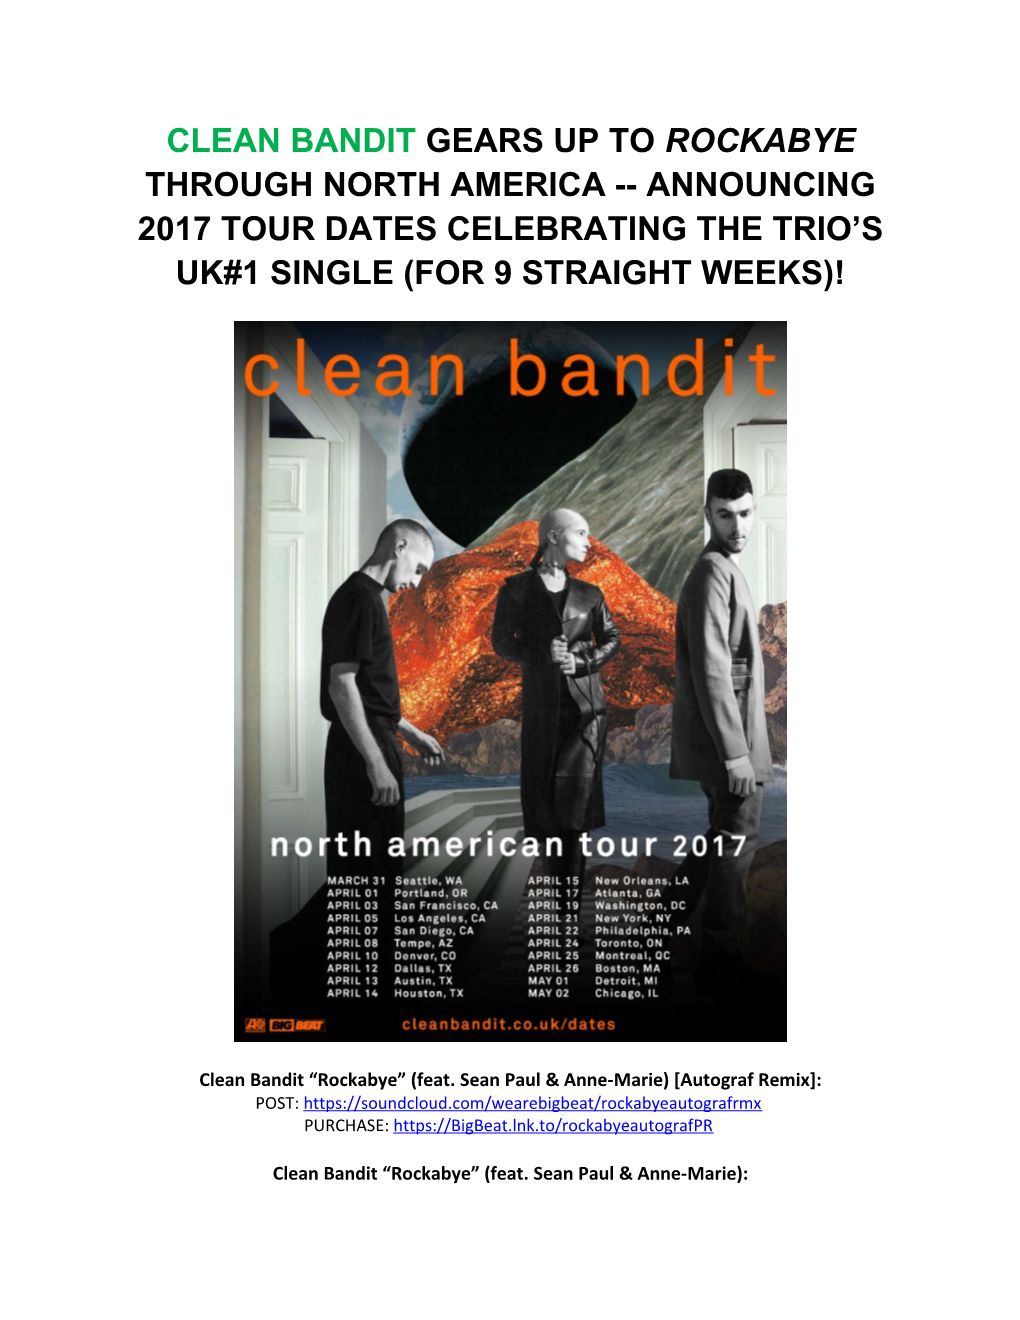 Clean Bandit Rockabye (Feat. Sean Paul & Anne-Marie) Autograf Remix